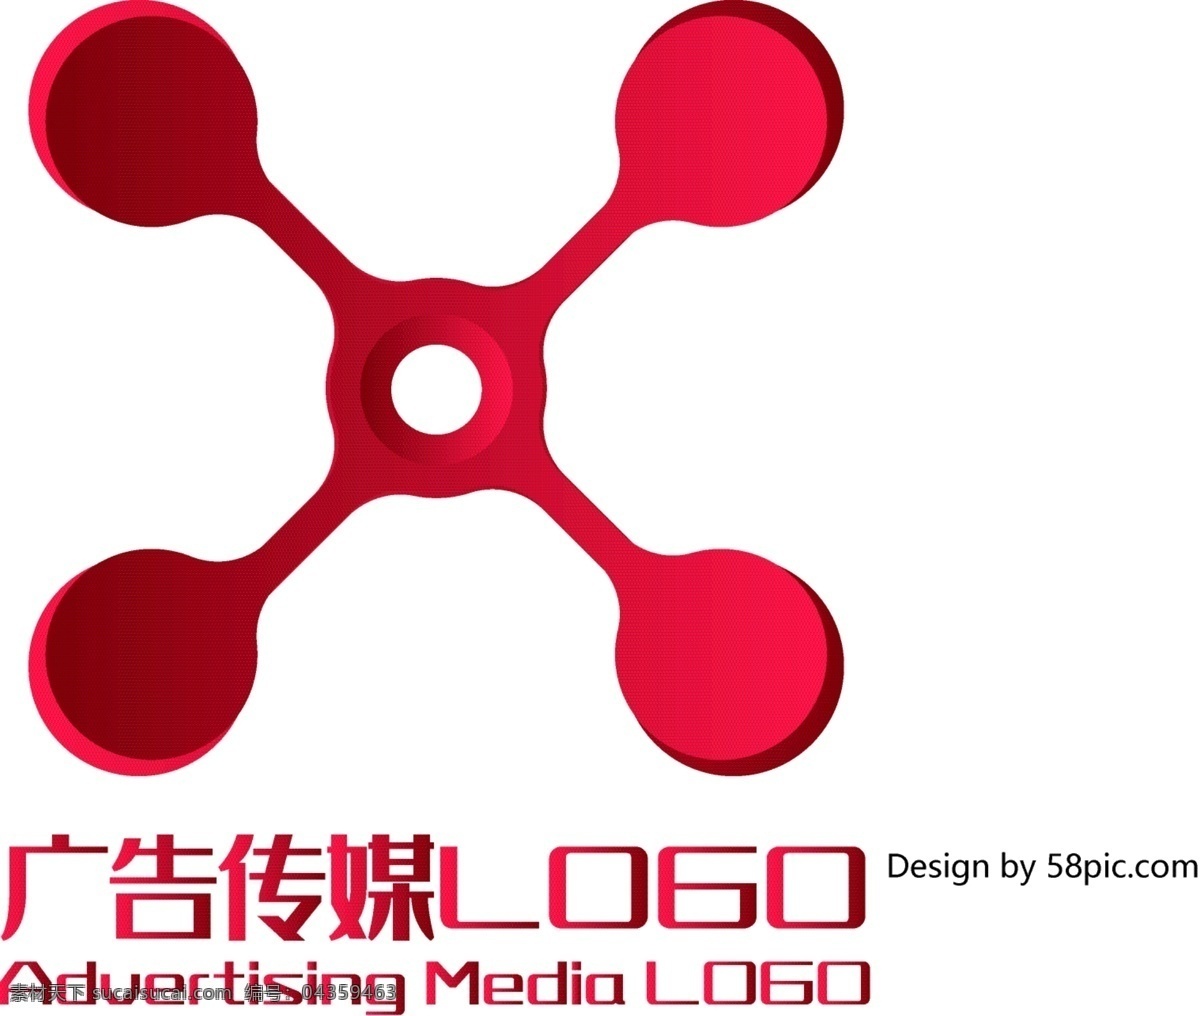 原创 创意 简约 大气 科技 x 字 广告 传媒 logo 可商用 字体设计 标志